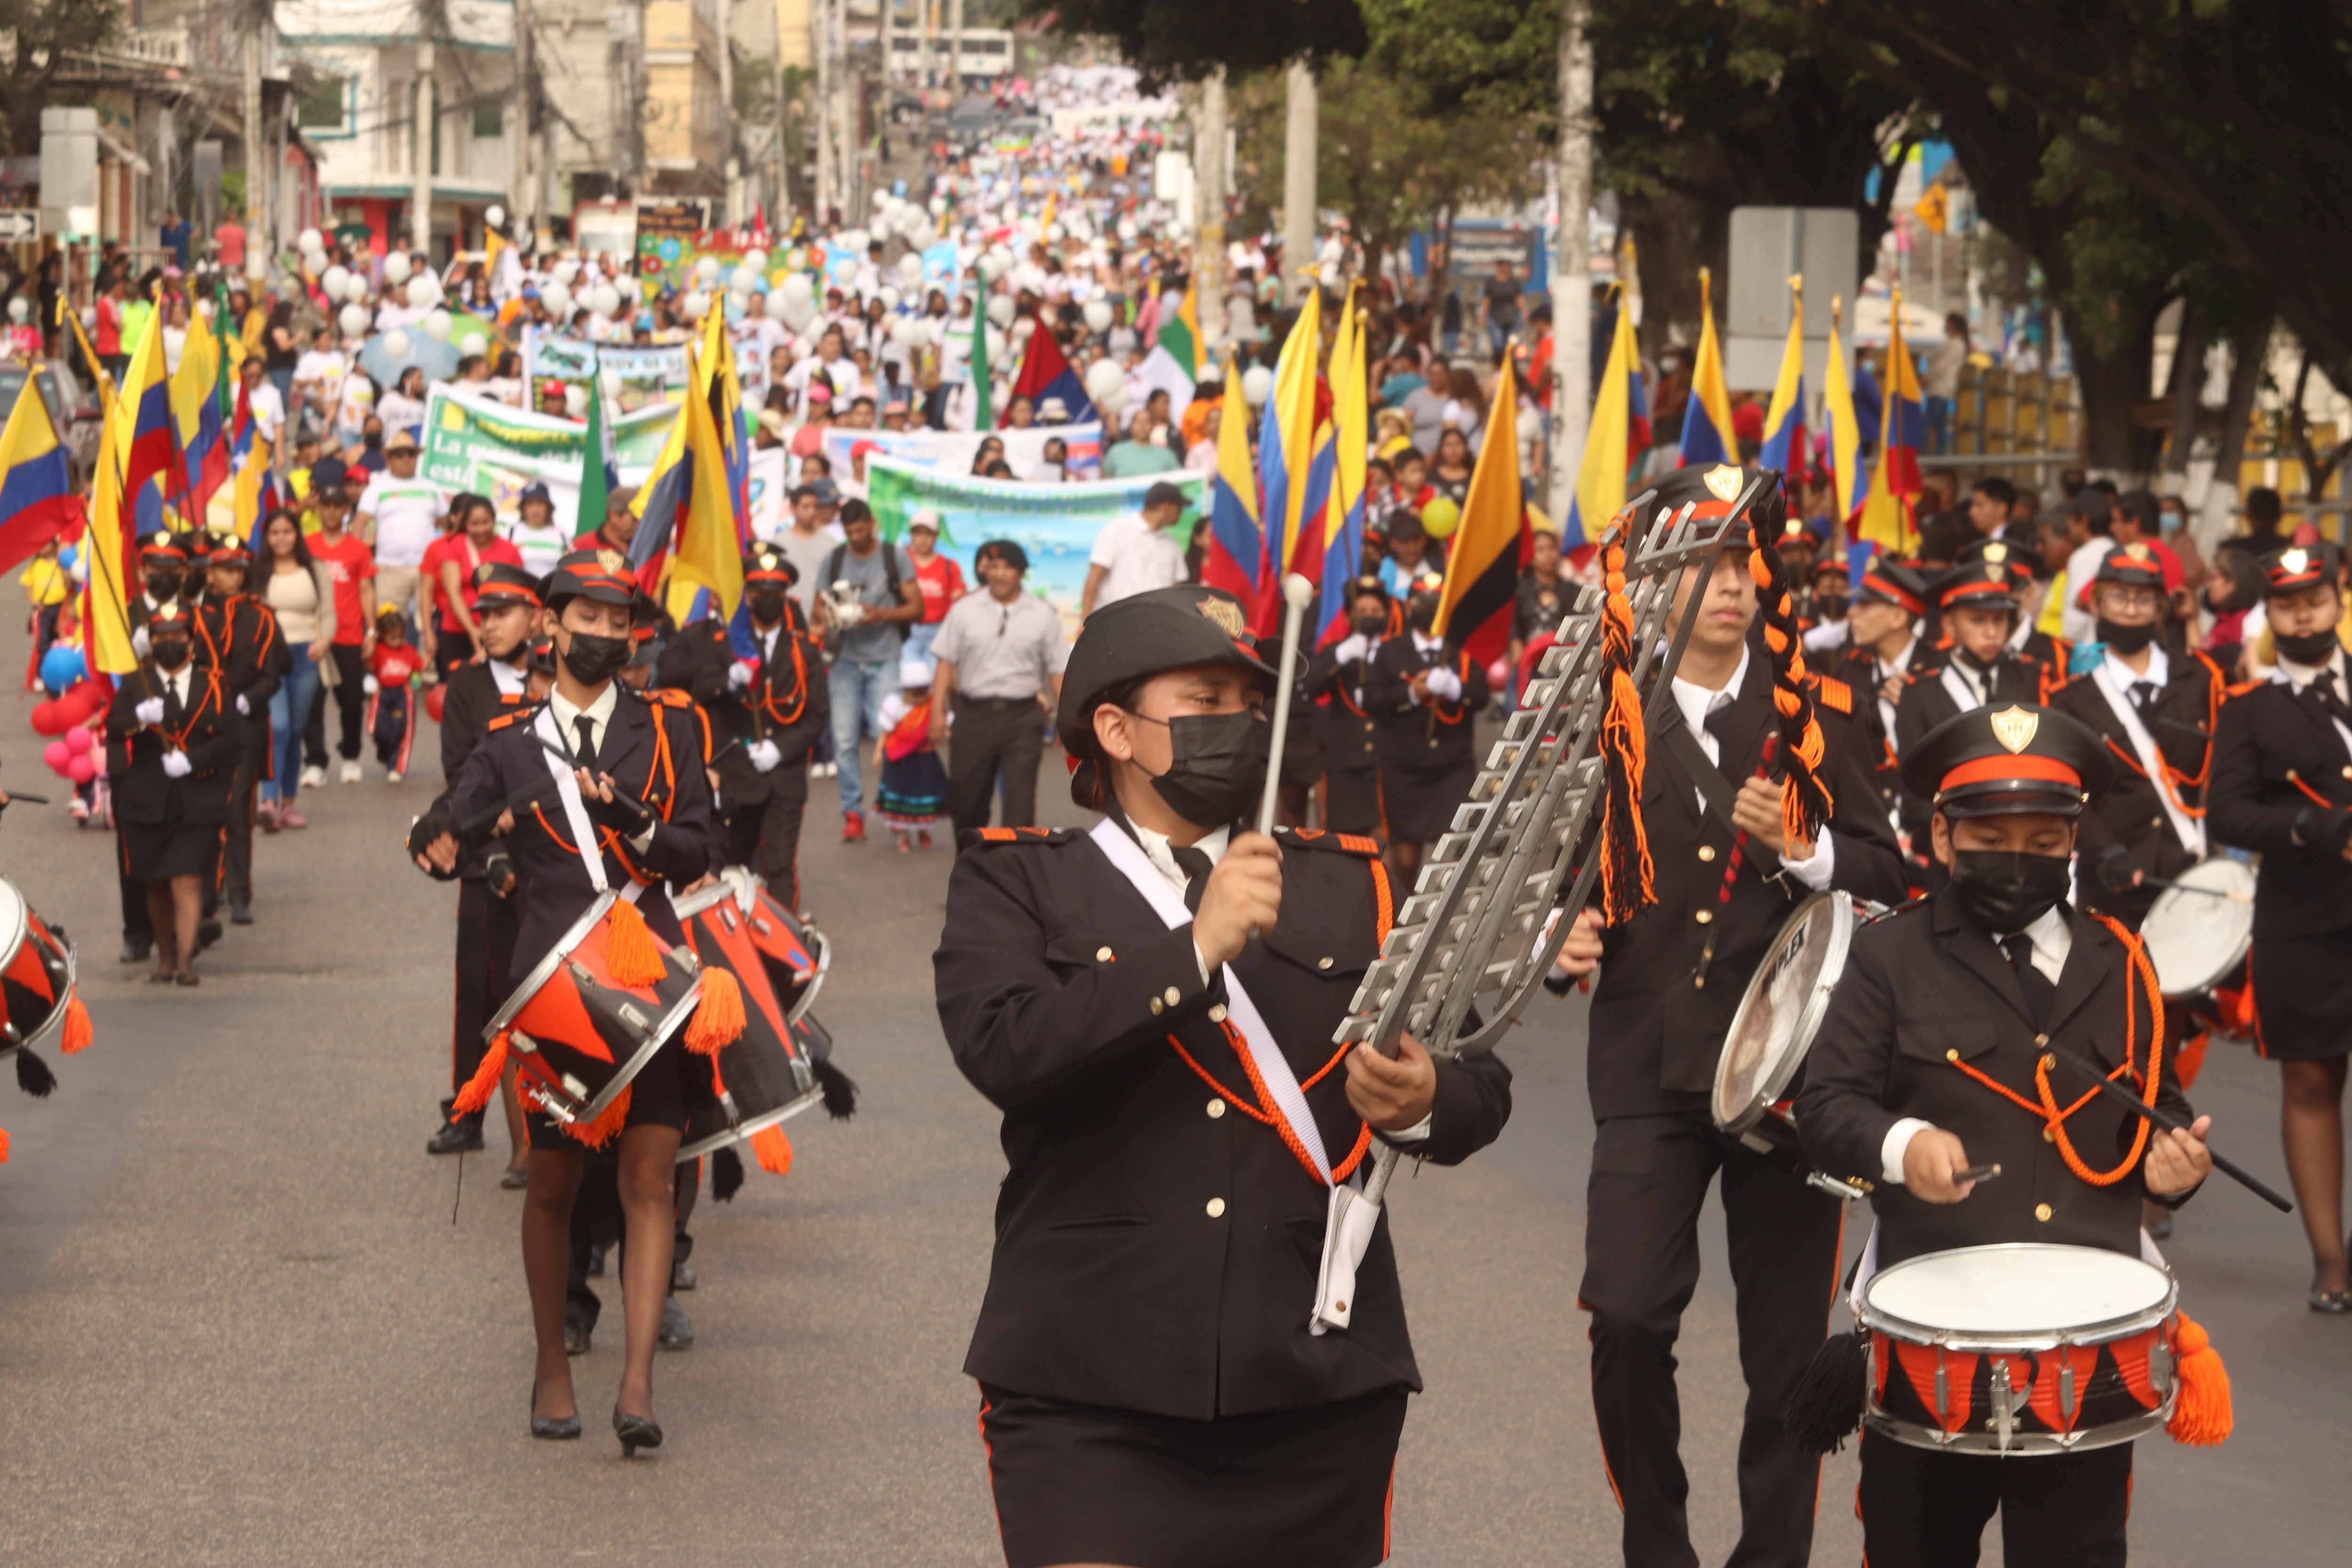 En la Florida, sector afectado por la inseguridad, los alumnos rinden tributo a Guayaquil y hacen llamado a la paz en desfile